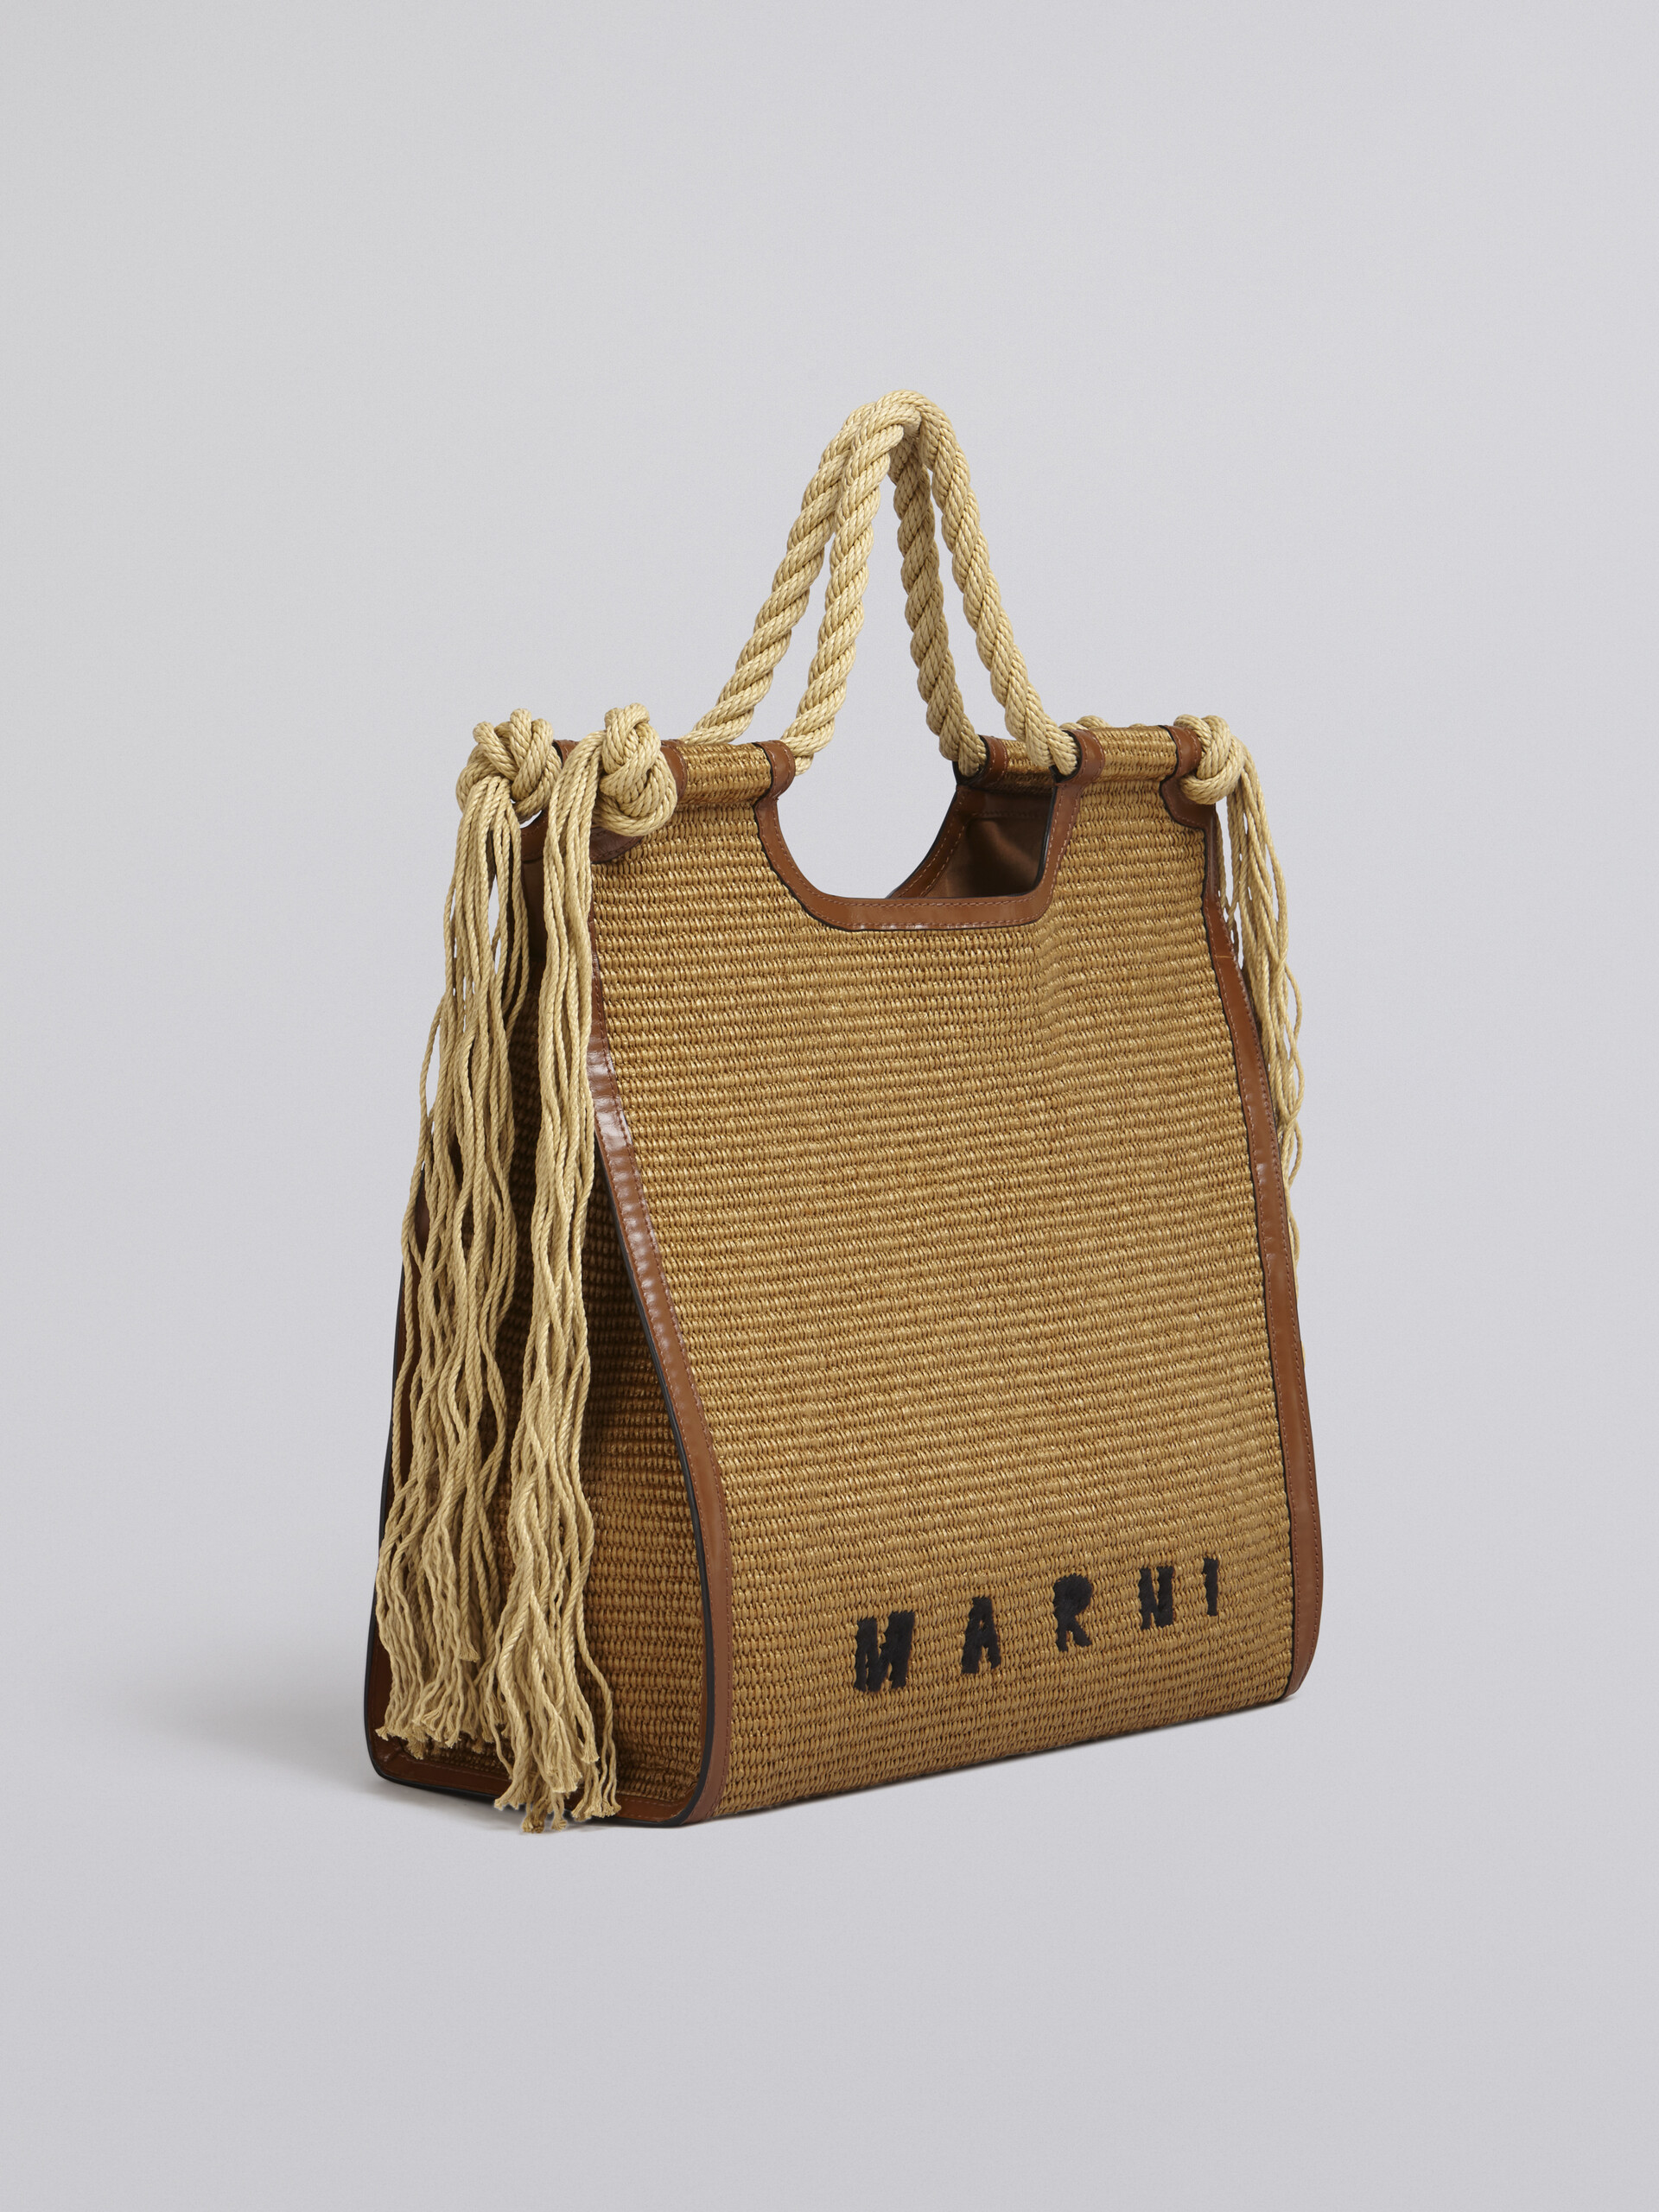 Sommertasche MARCEL aus einem Material in Bast-Optik, mit braunem Leder und Seilgriffen - Handtaschen - Image 6